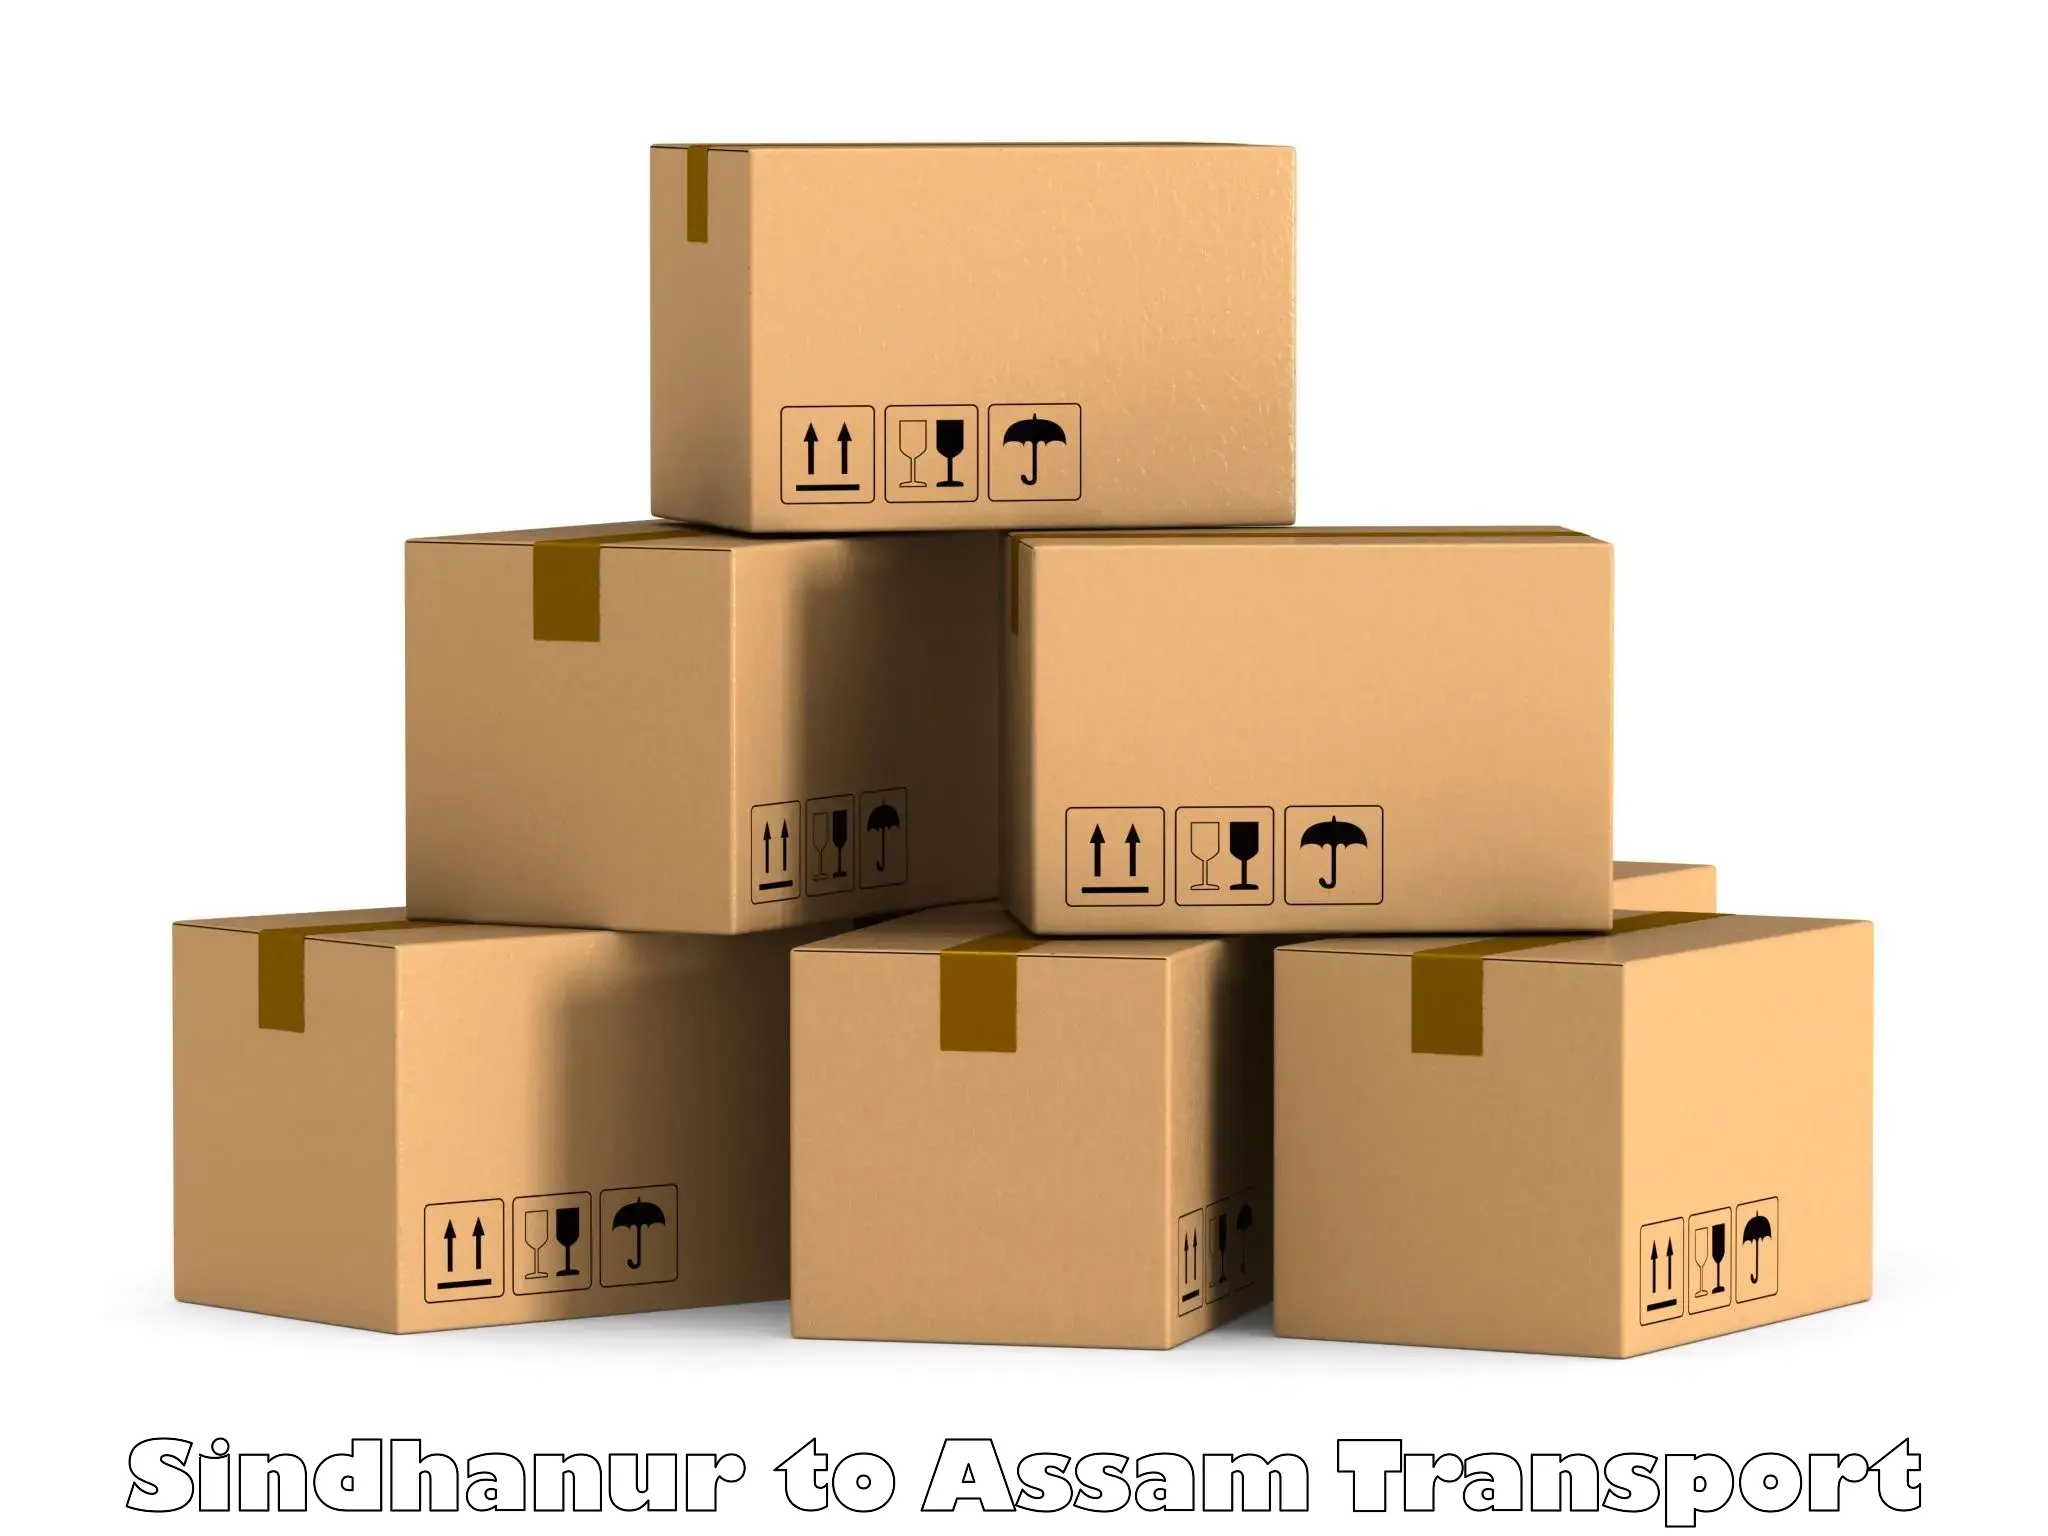 Furniture transport service Sindhanur to Rangia